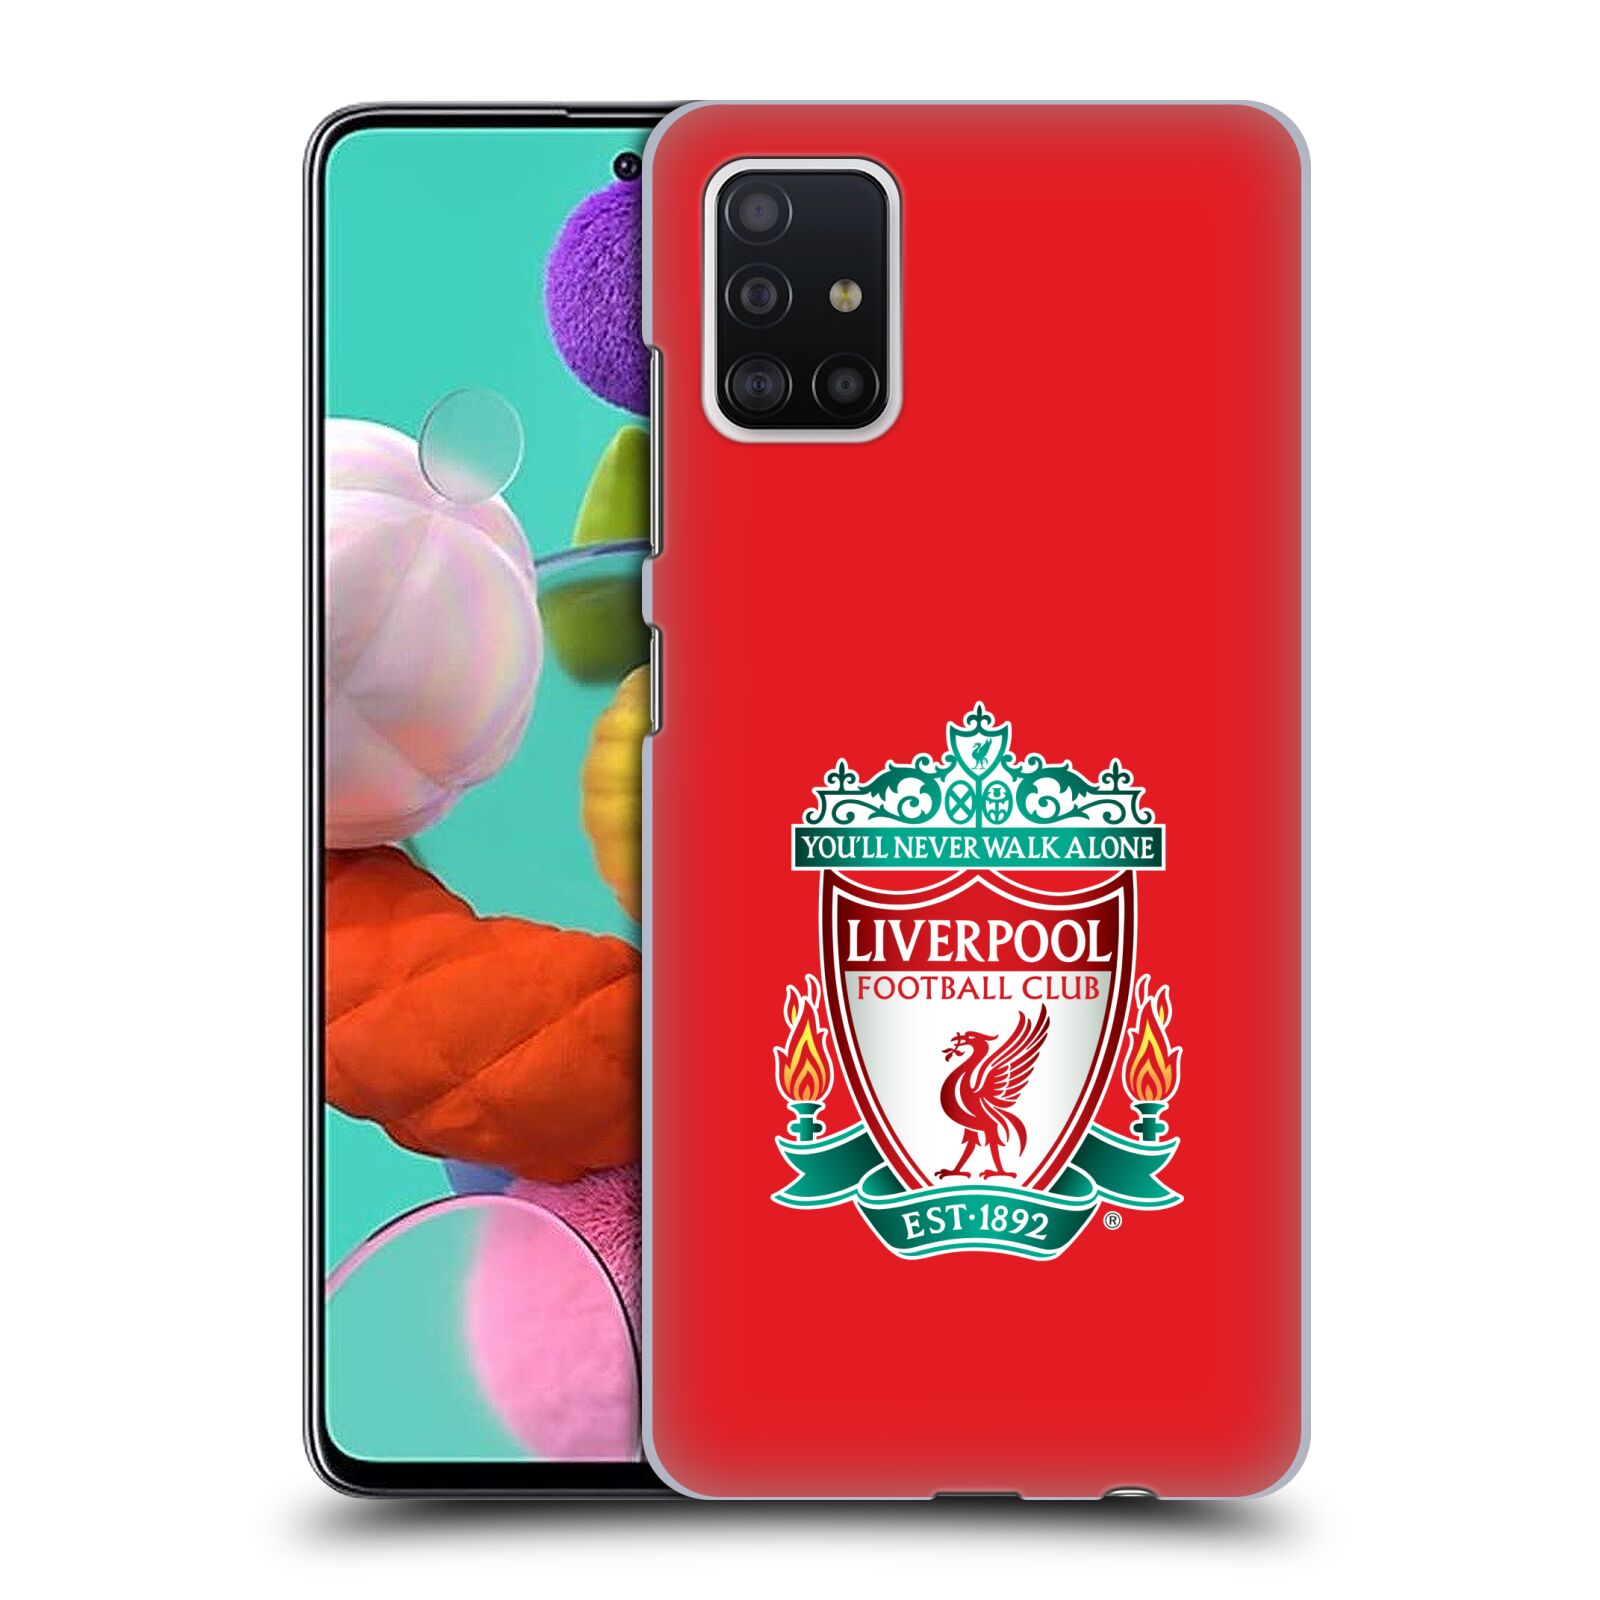 Pouzdro na mobil Samsung Galaxy A51 - HEAD CASE - Fotbalový klub Liverpool barevný znak červené pozadí